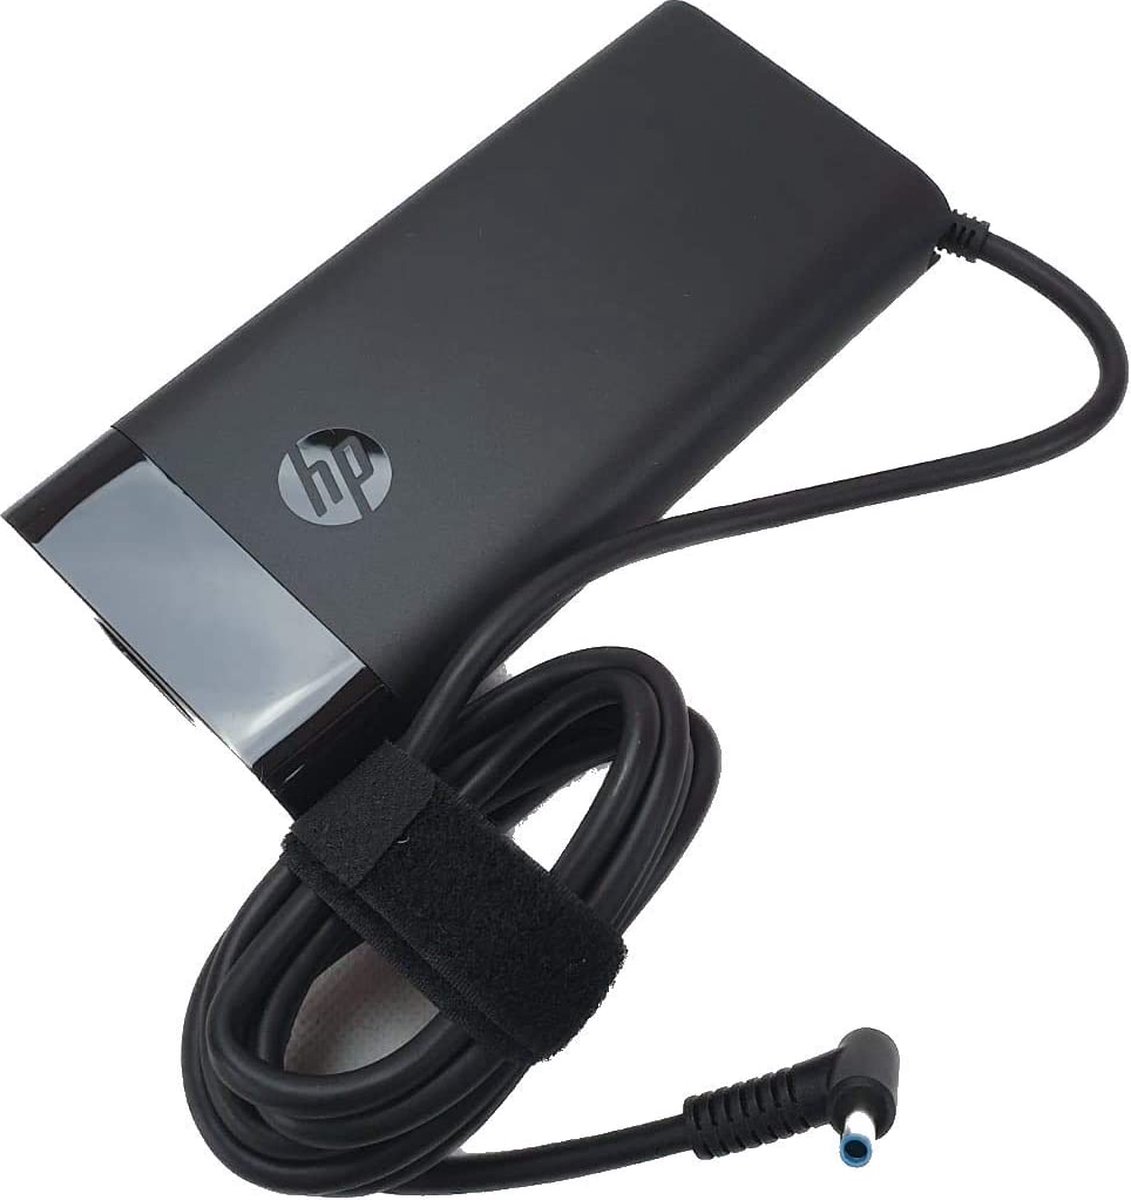 HP AC Adapter 200W Slim - Nätsladd ingår inte 